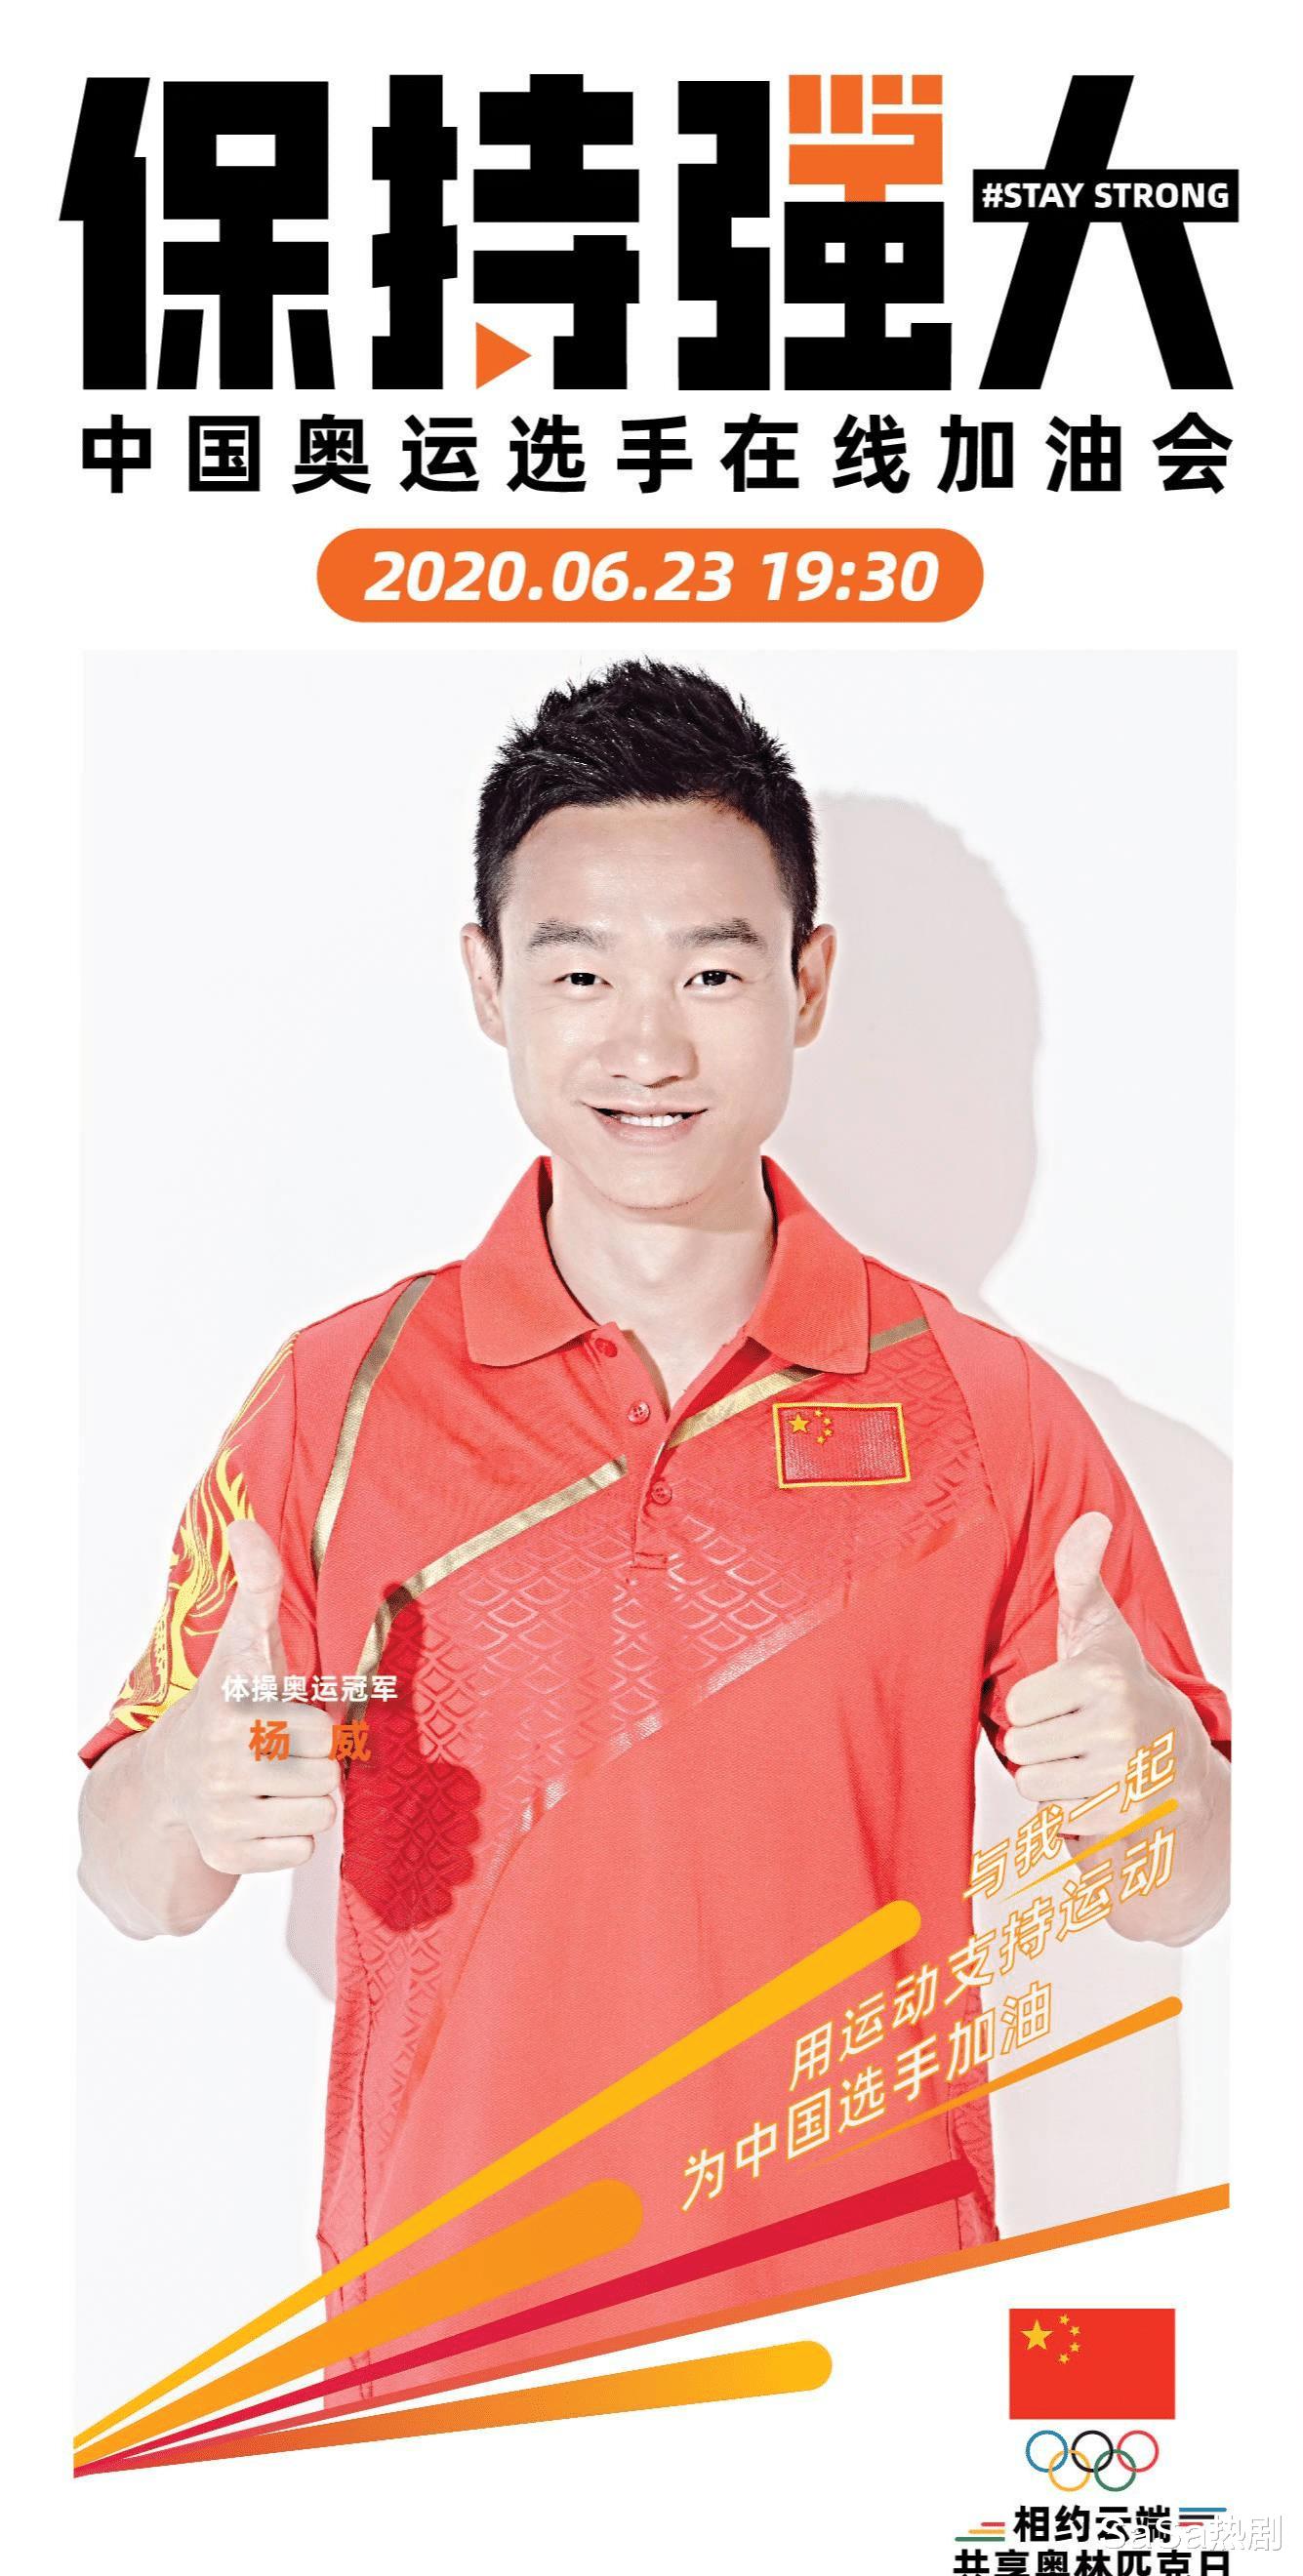 奥运冠军杨威，终身要佩戴呼吸机？才43岁啊，根本没想到会这样！(24)